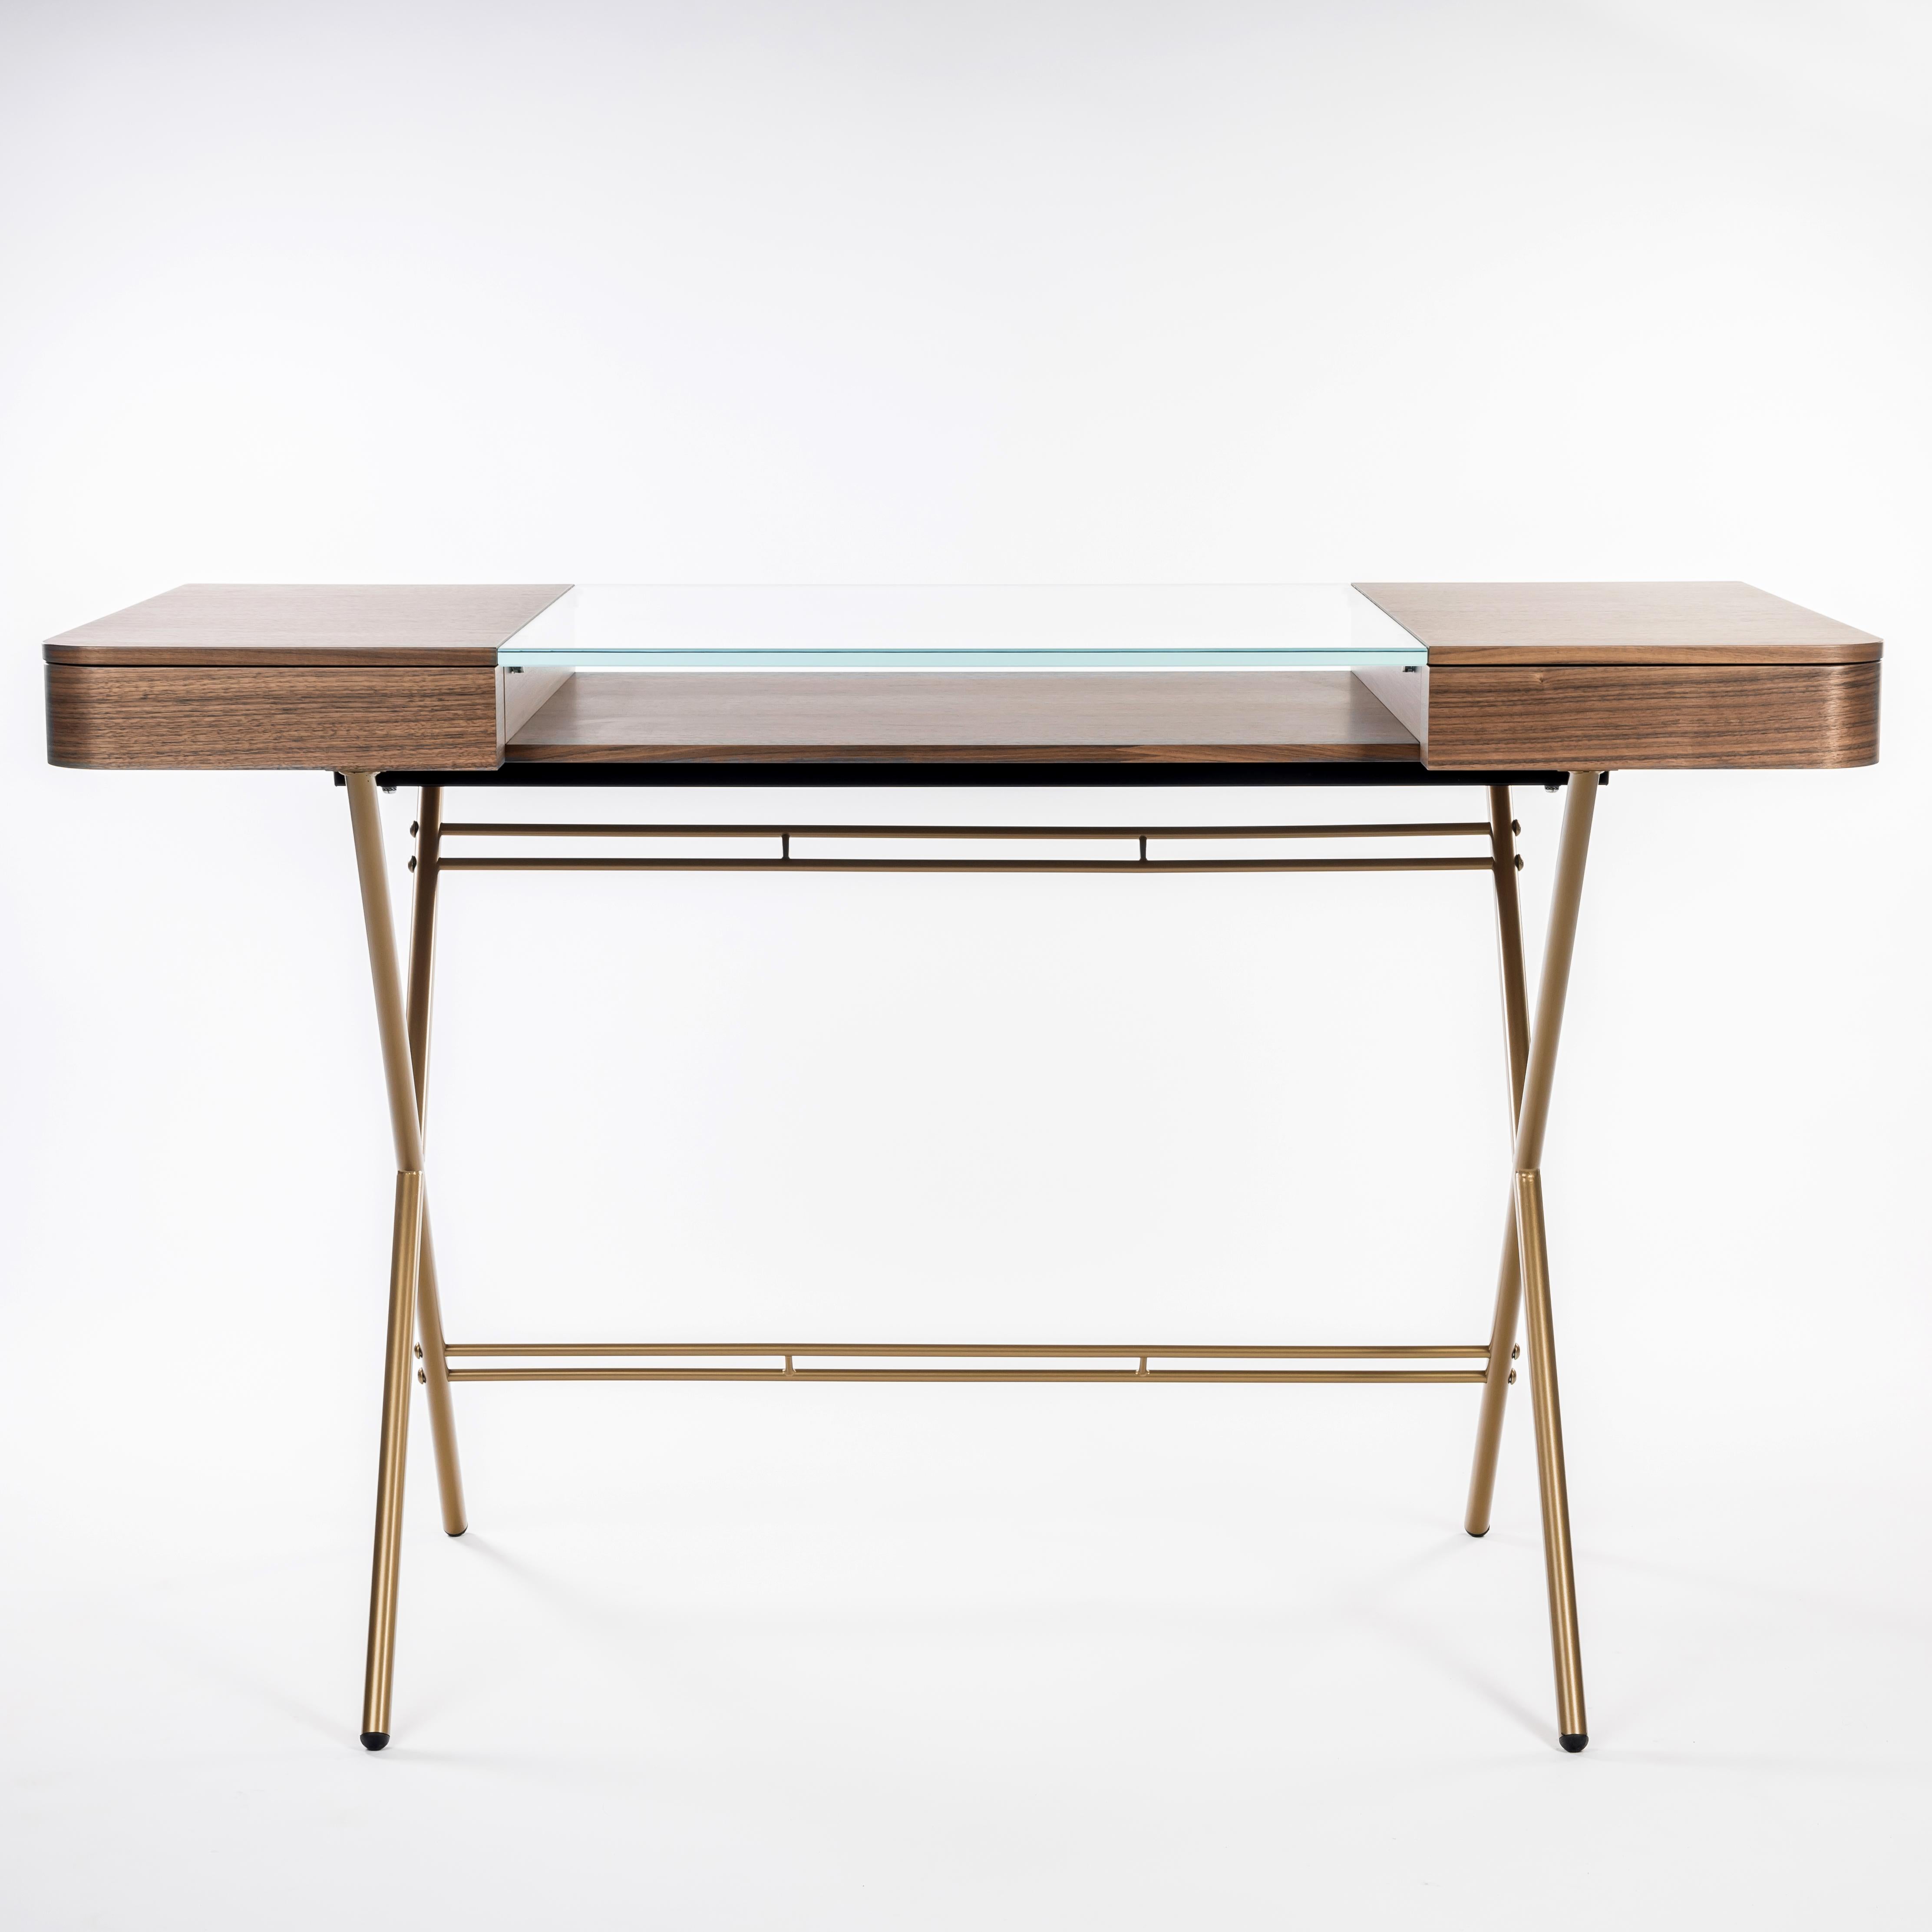 Der Schreibtisch Cosimo wurde von dem Architekten Marco Zanuso JR für die französische Luxusmöbelmarke Adentro Paris entworfen.
Der Schreibtisch besteht aus einer zentralen Klarglasplatte mit einer Ablage darunter und hat auf beiden Seiten